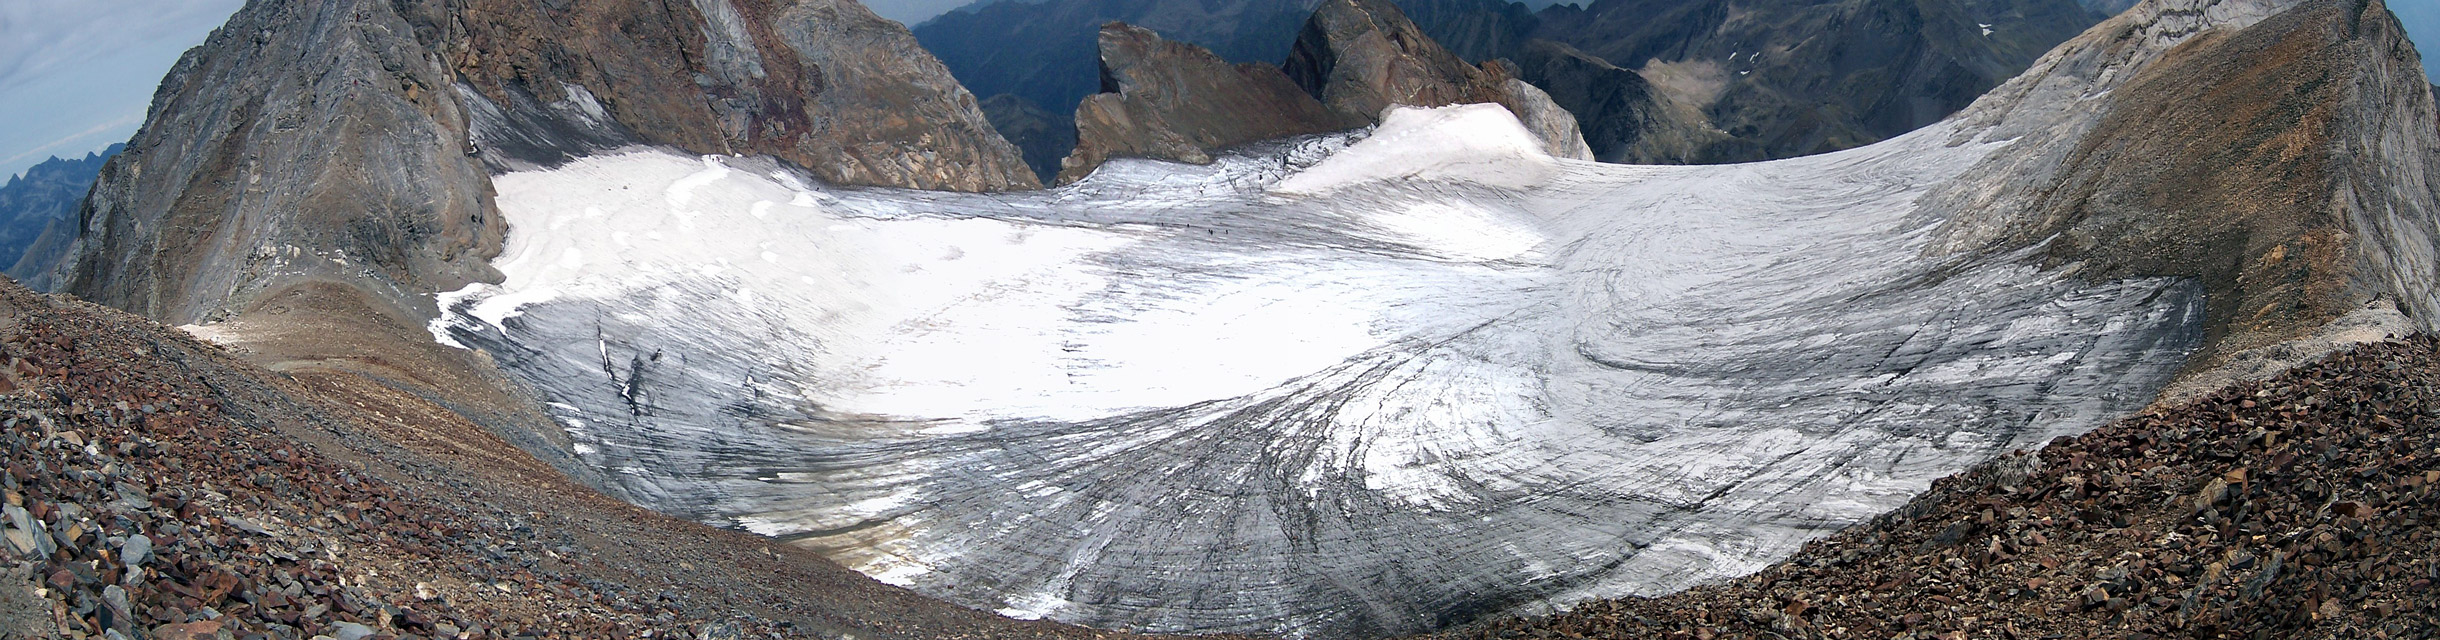 Vista del glaciar del Vignemale desde el Cerbillonona (3247 m)